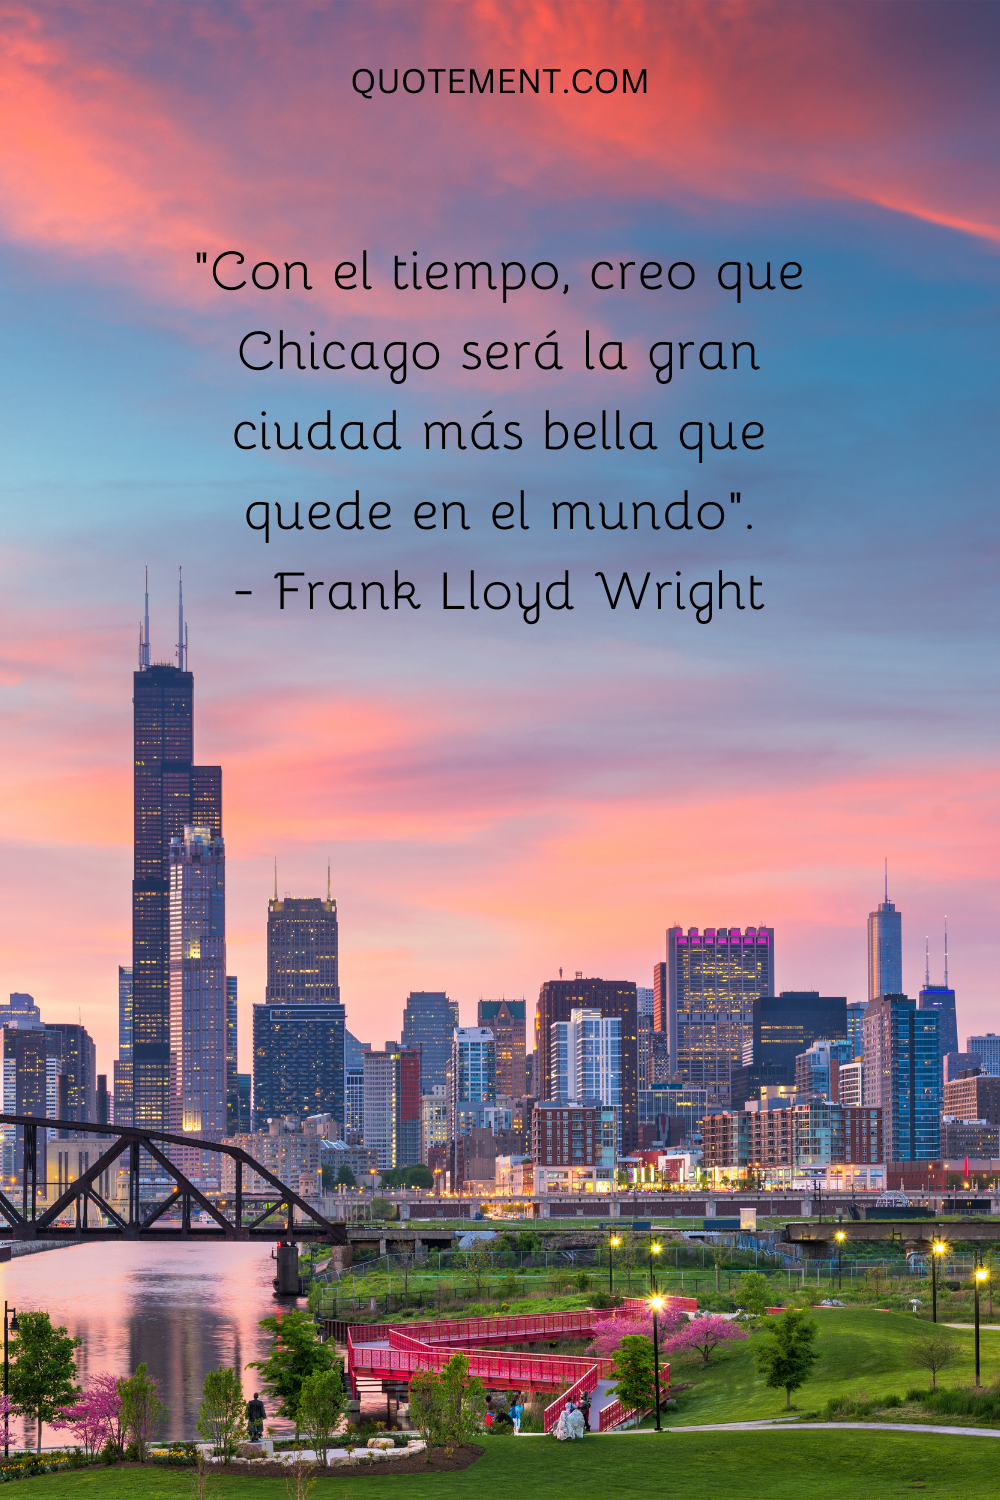 "Con el tiempo, creo que Chicago será la gran ciudad más bella que quede en el mundo". - Frank Lloyd Wright